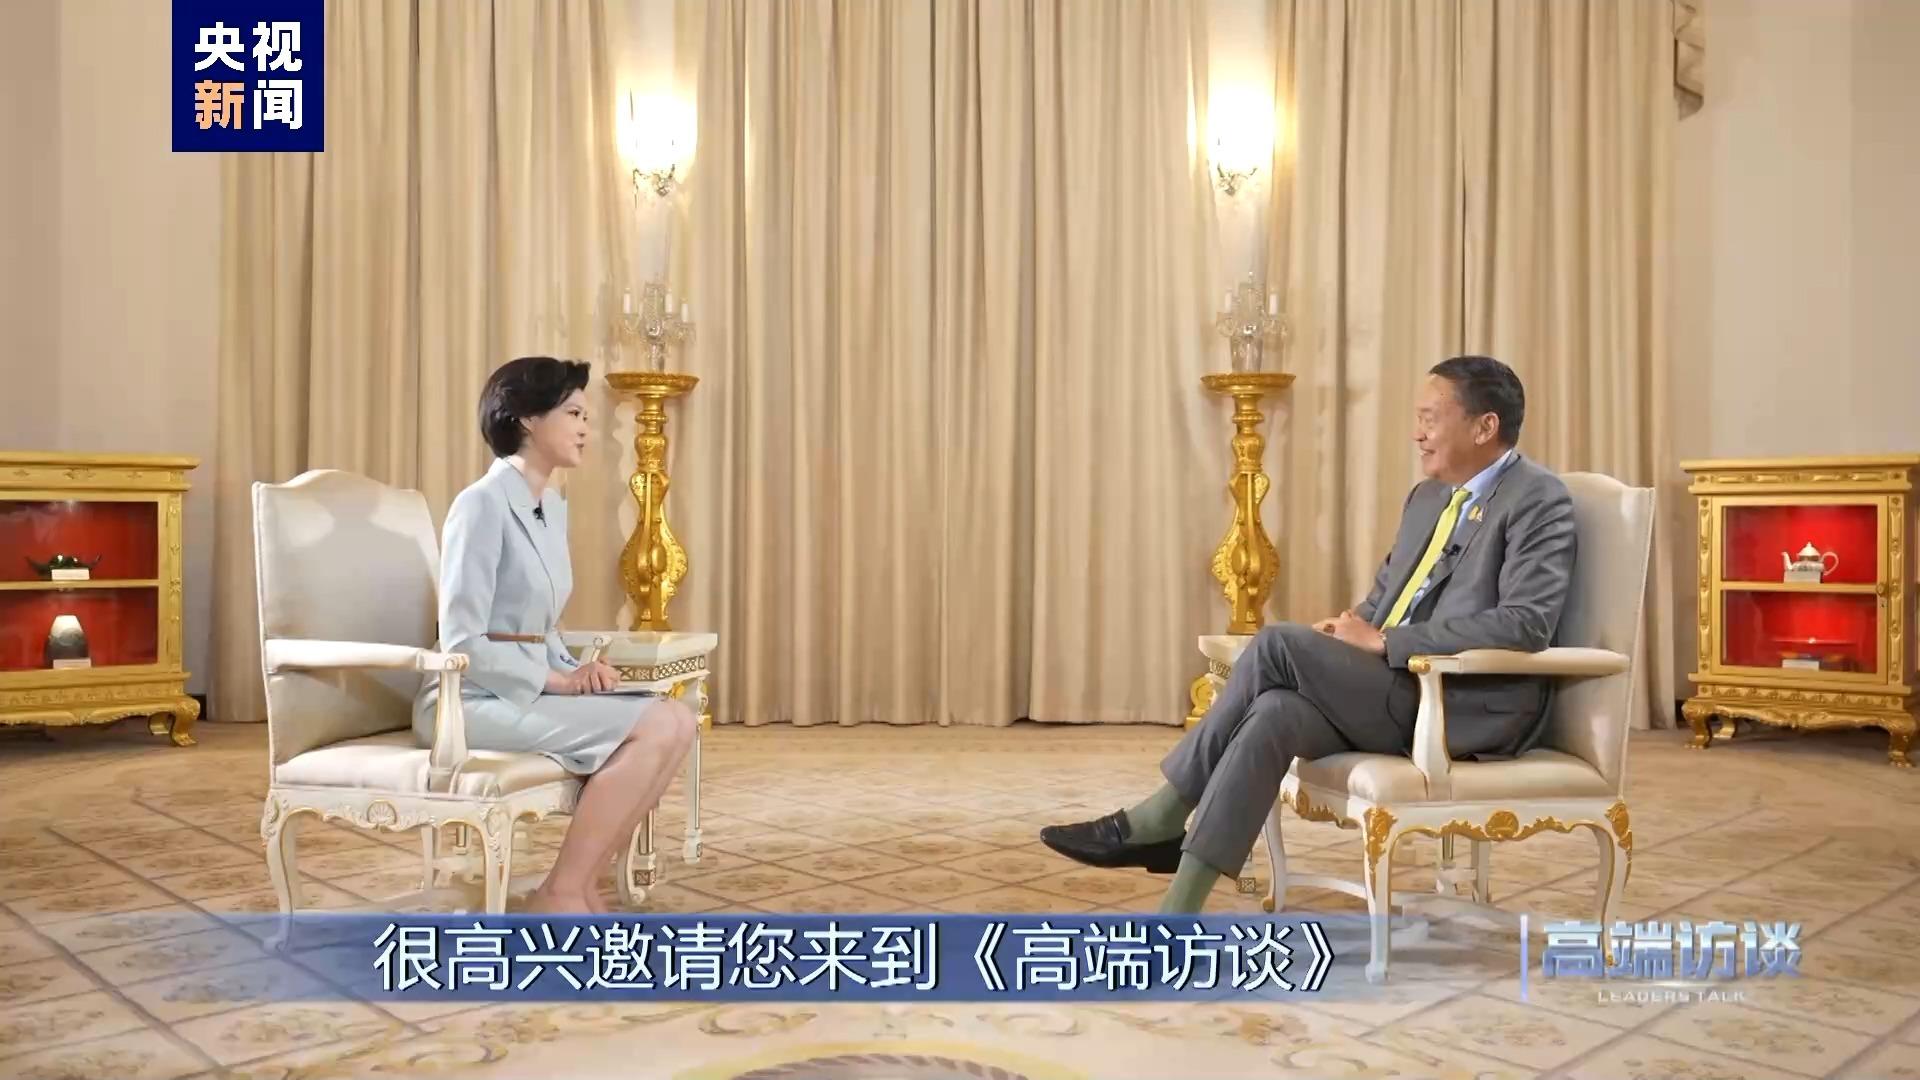 Wywiad CMG z premier Tajlandii Srettha Thavisin: Tajlandia uważa Chiny za swojego starszego brata